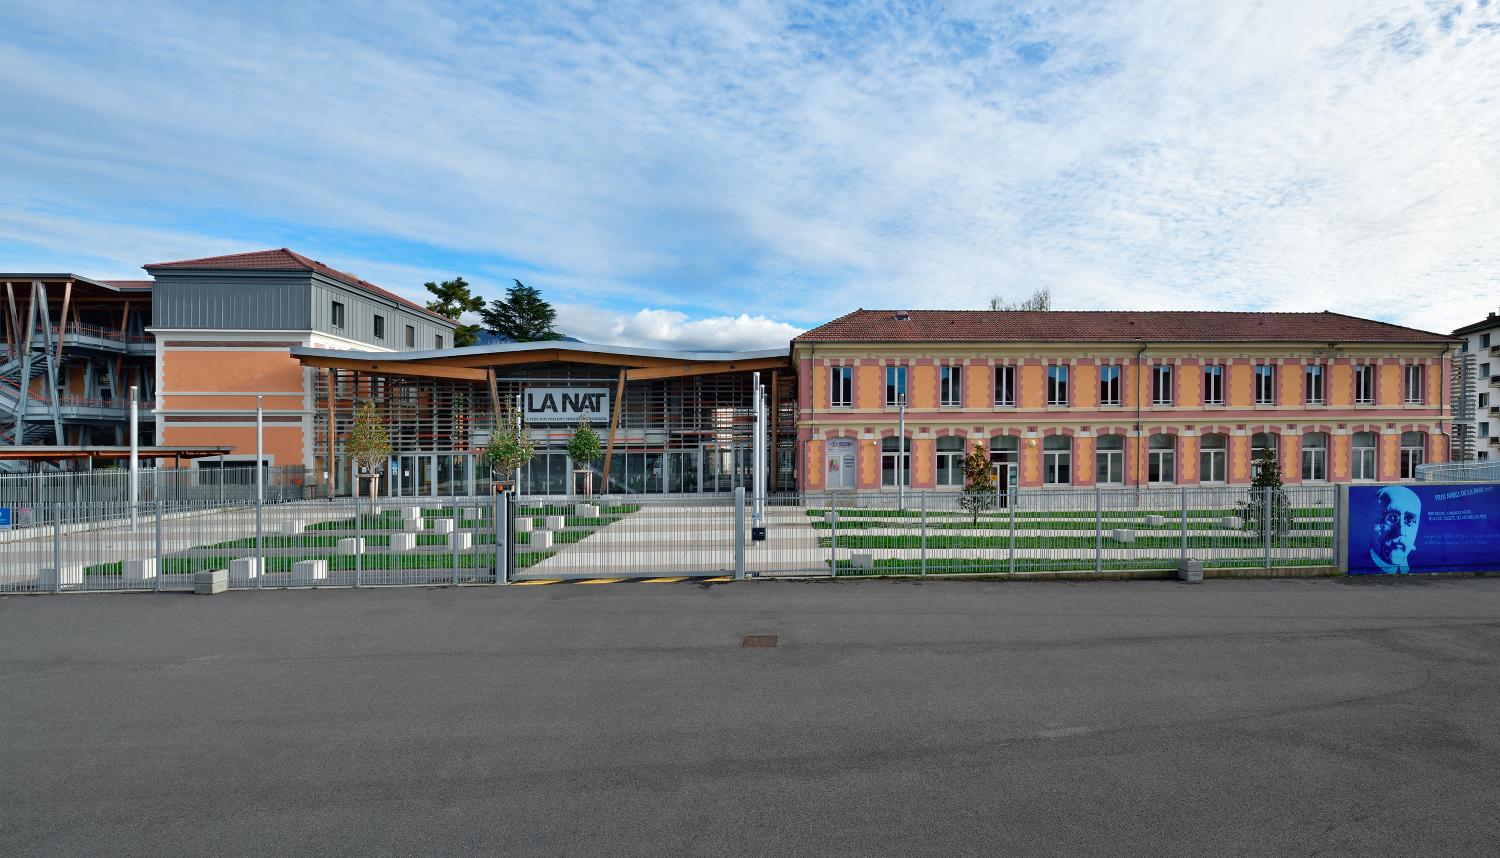 Ecole nationale professionnelle, puis lycée technique, actuellement lycée polyvalent Ferdinand-Buisson, dit LA NAT